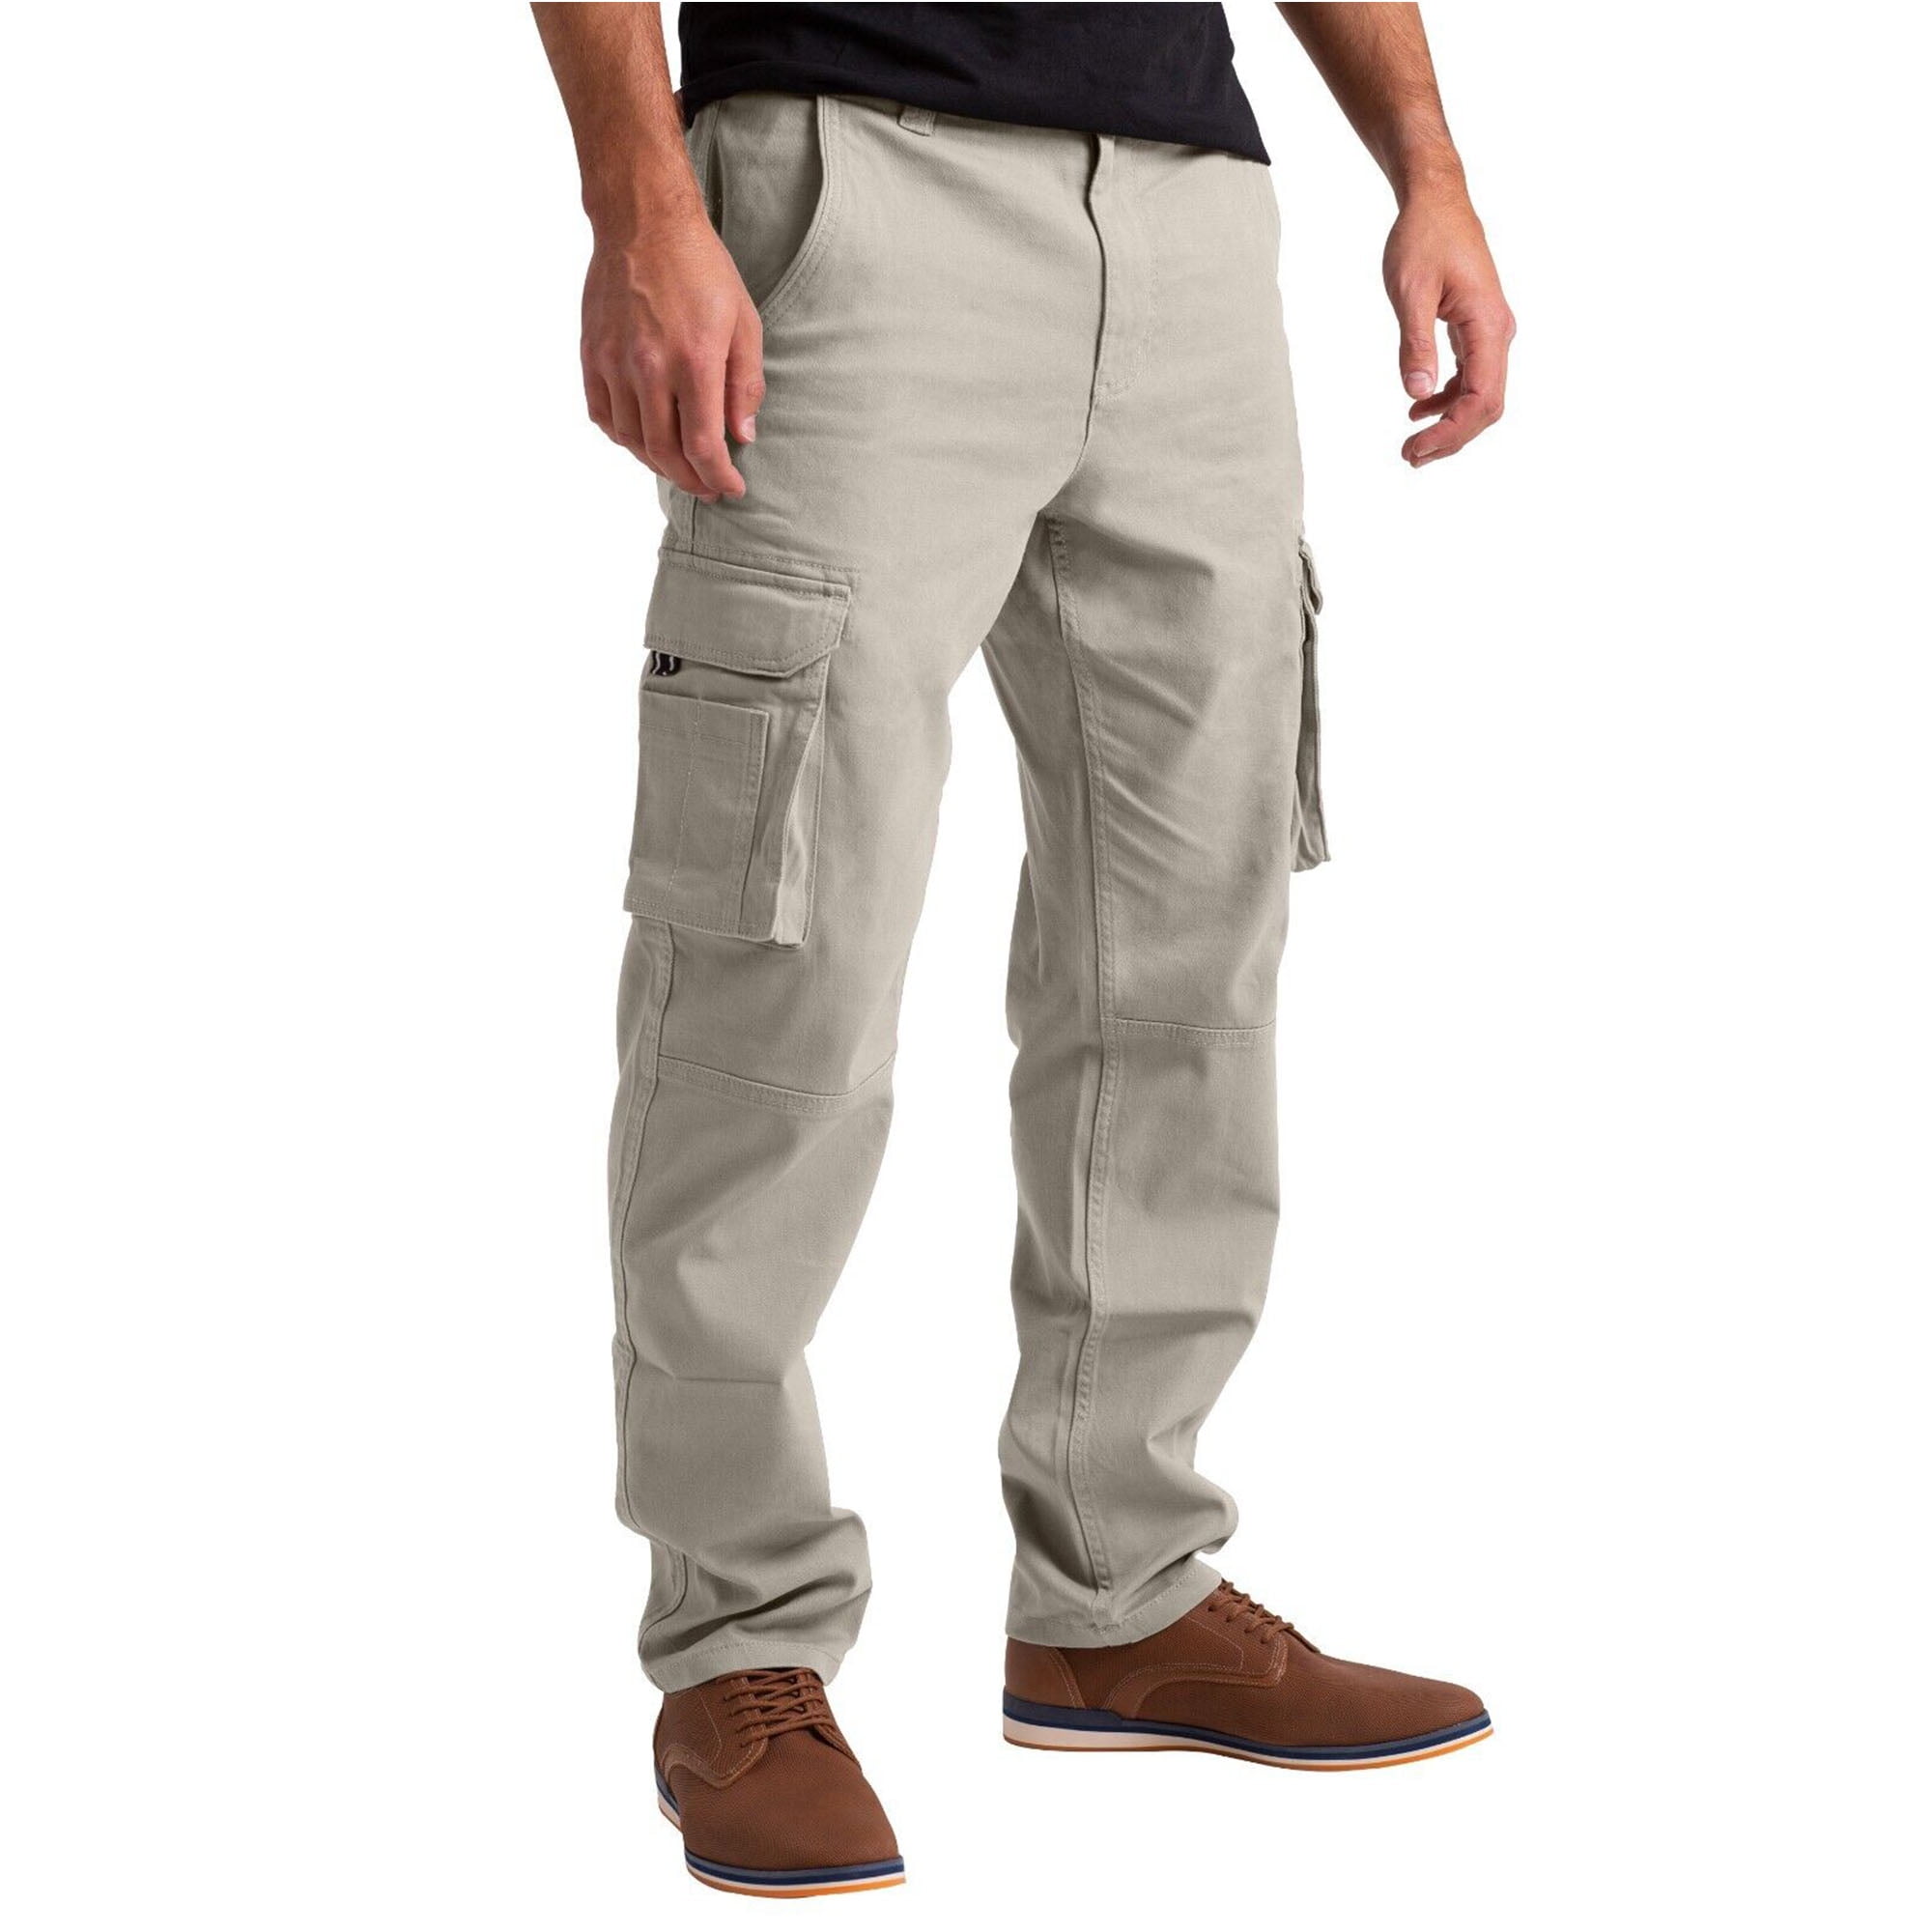 Safety Work Short Pants Heavy Duty Cargo Trousers  China Cargo Trousers  and Heavy Duty Trousers price  MadeinChinacom